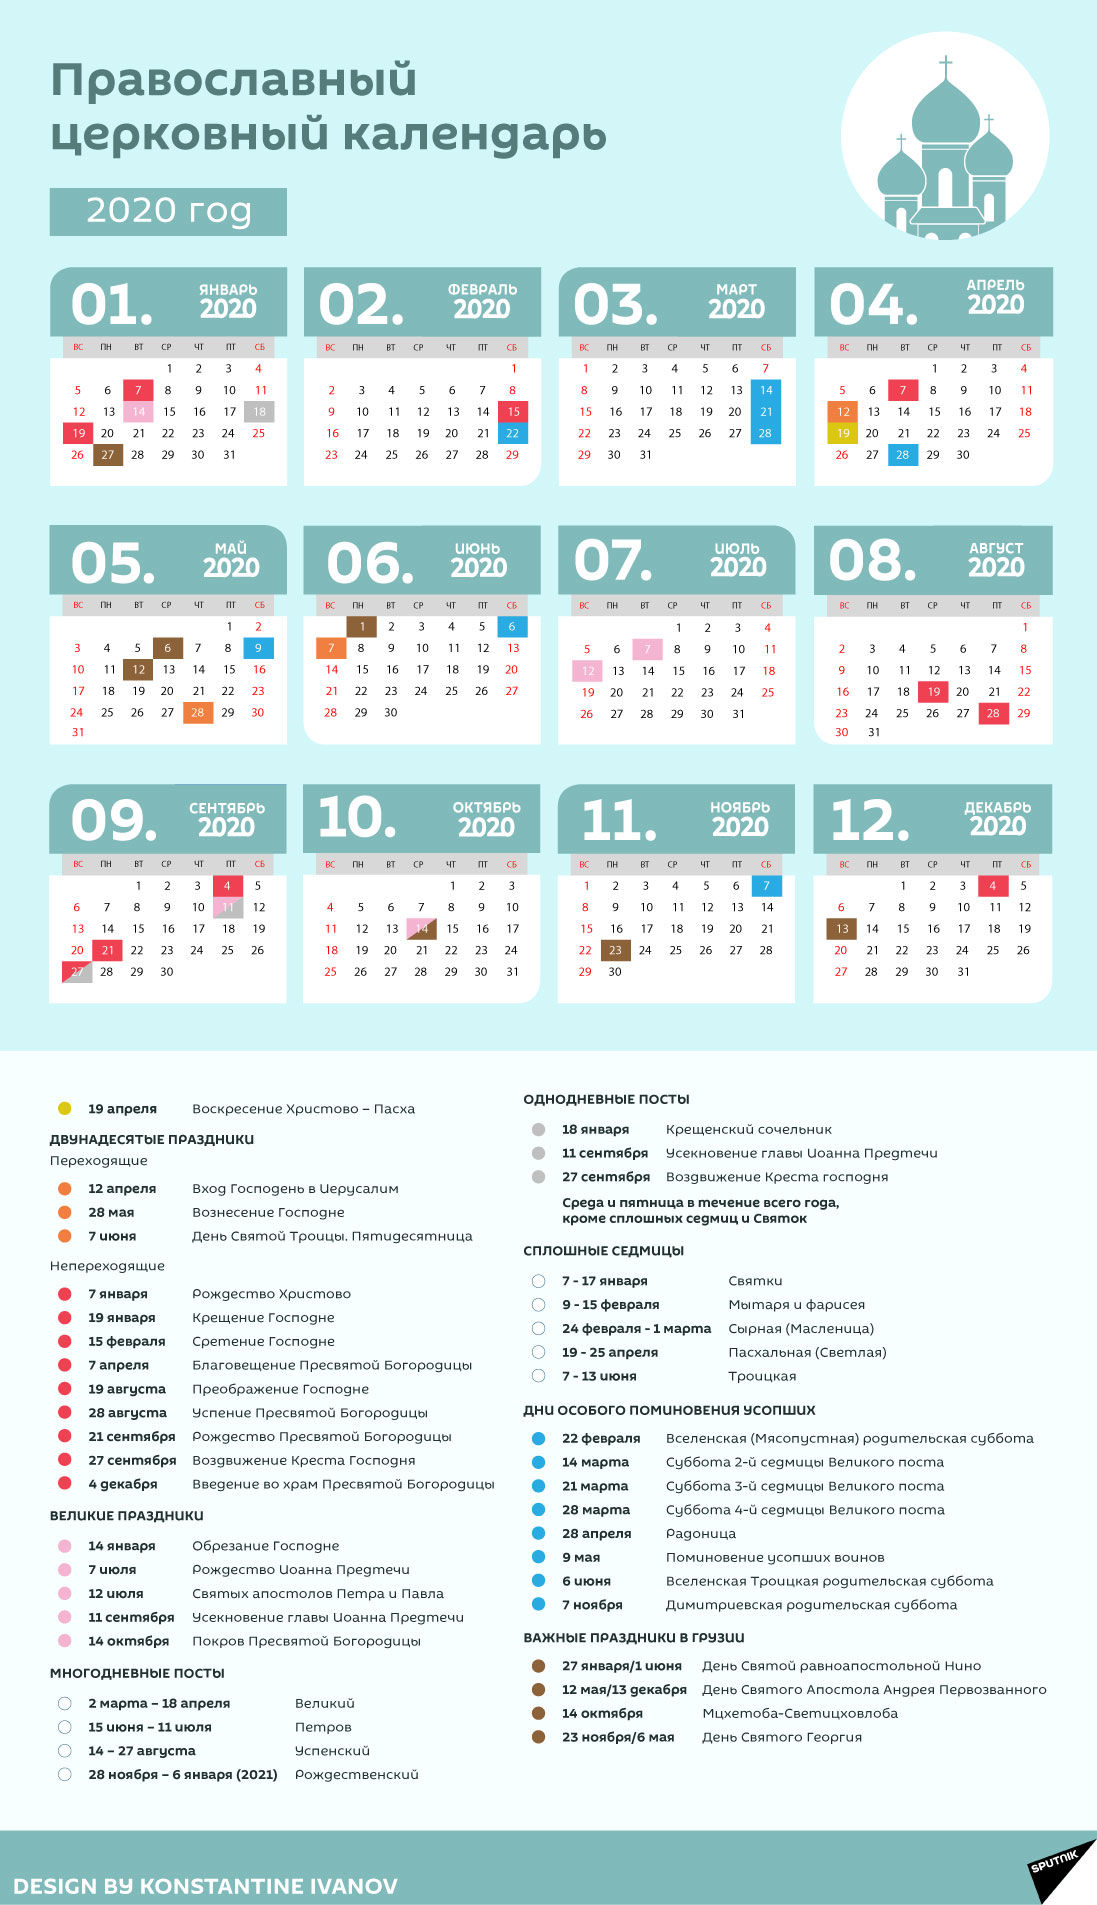 Православный церковный календарь на 2020 год - Sputnik Грузия